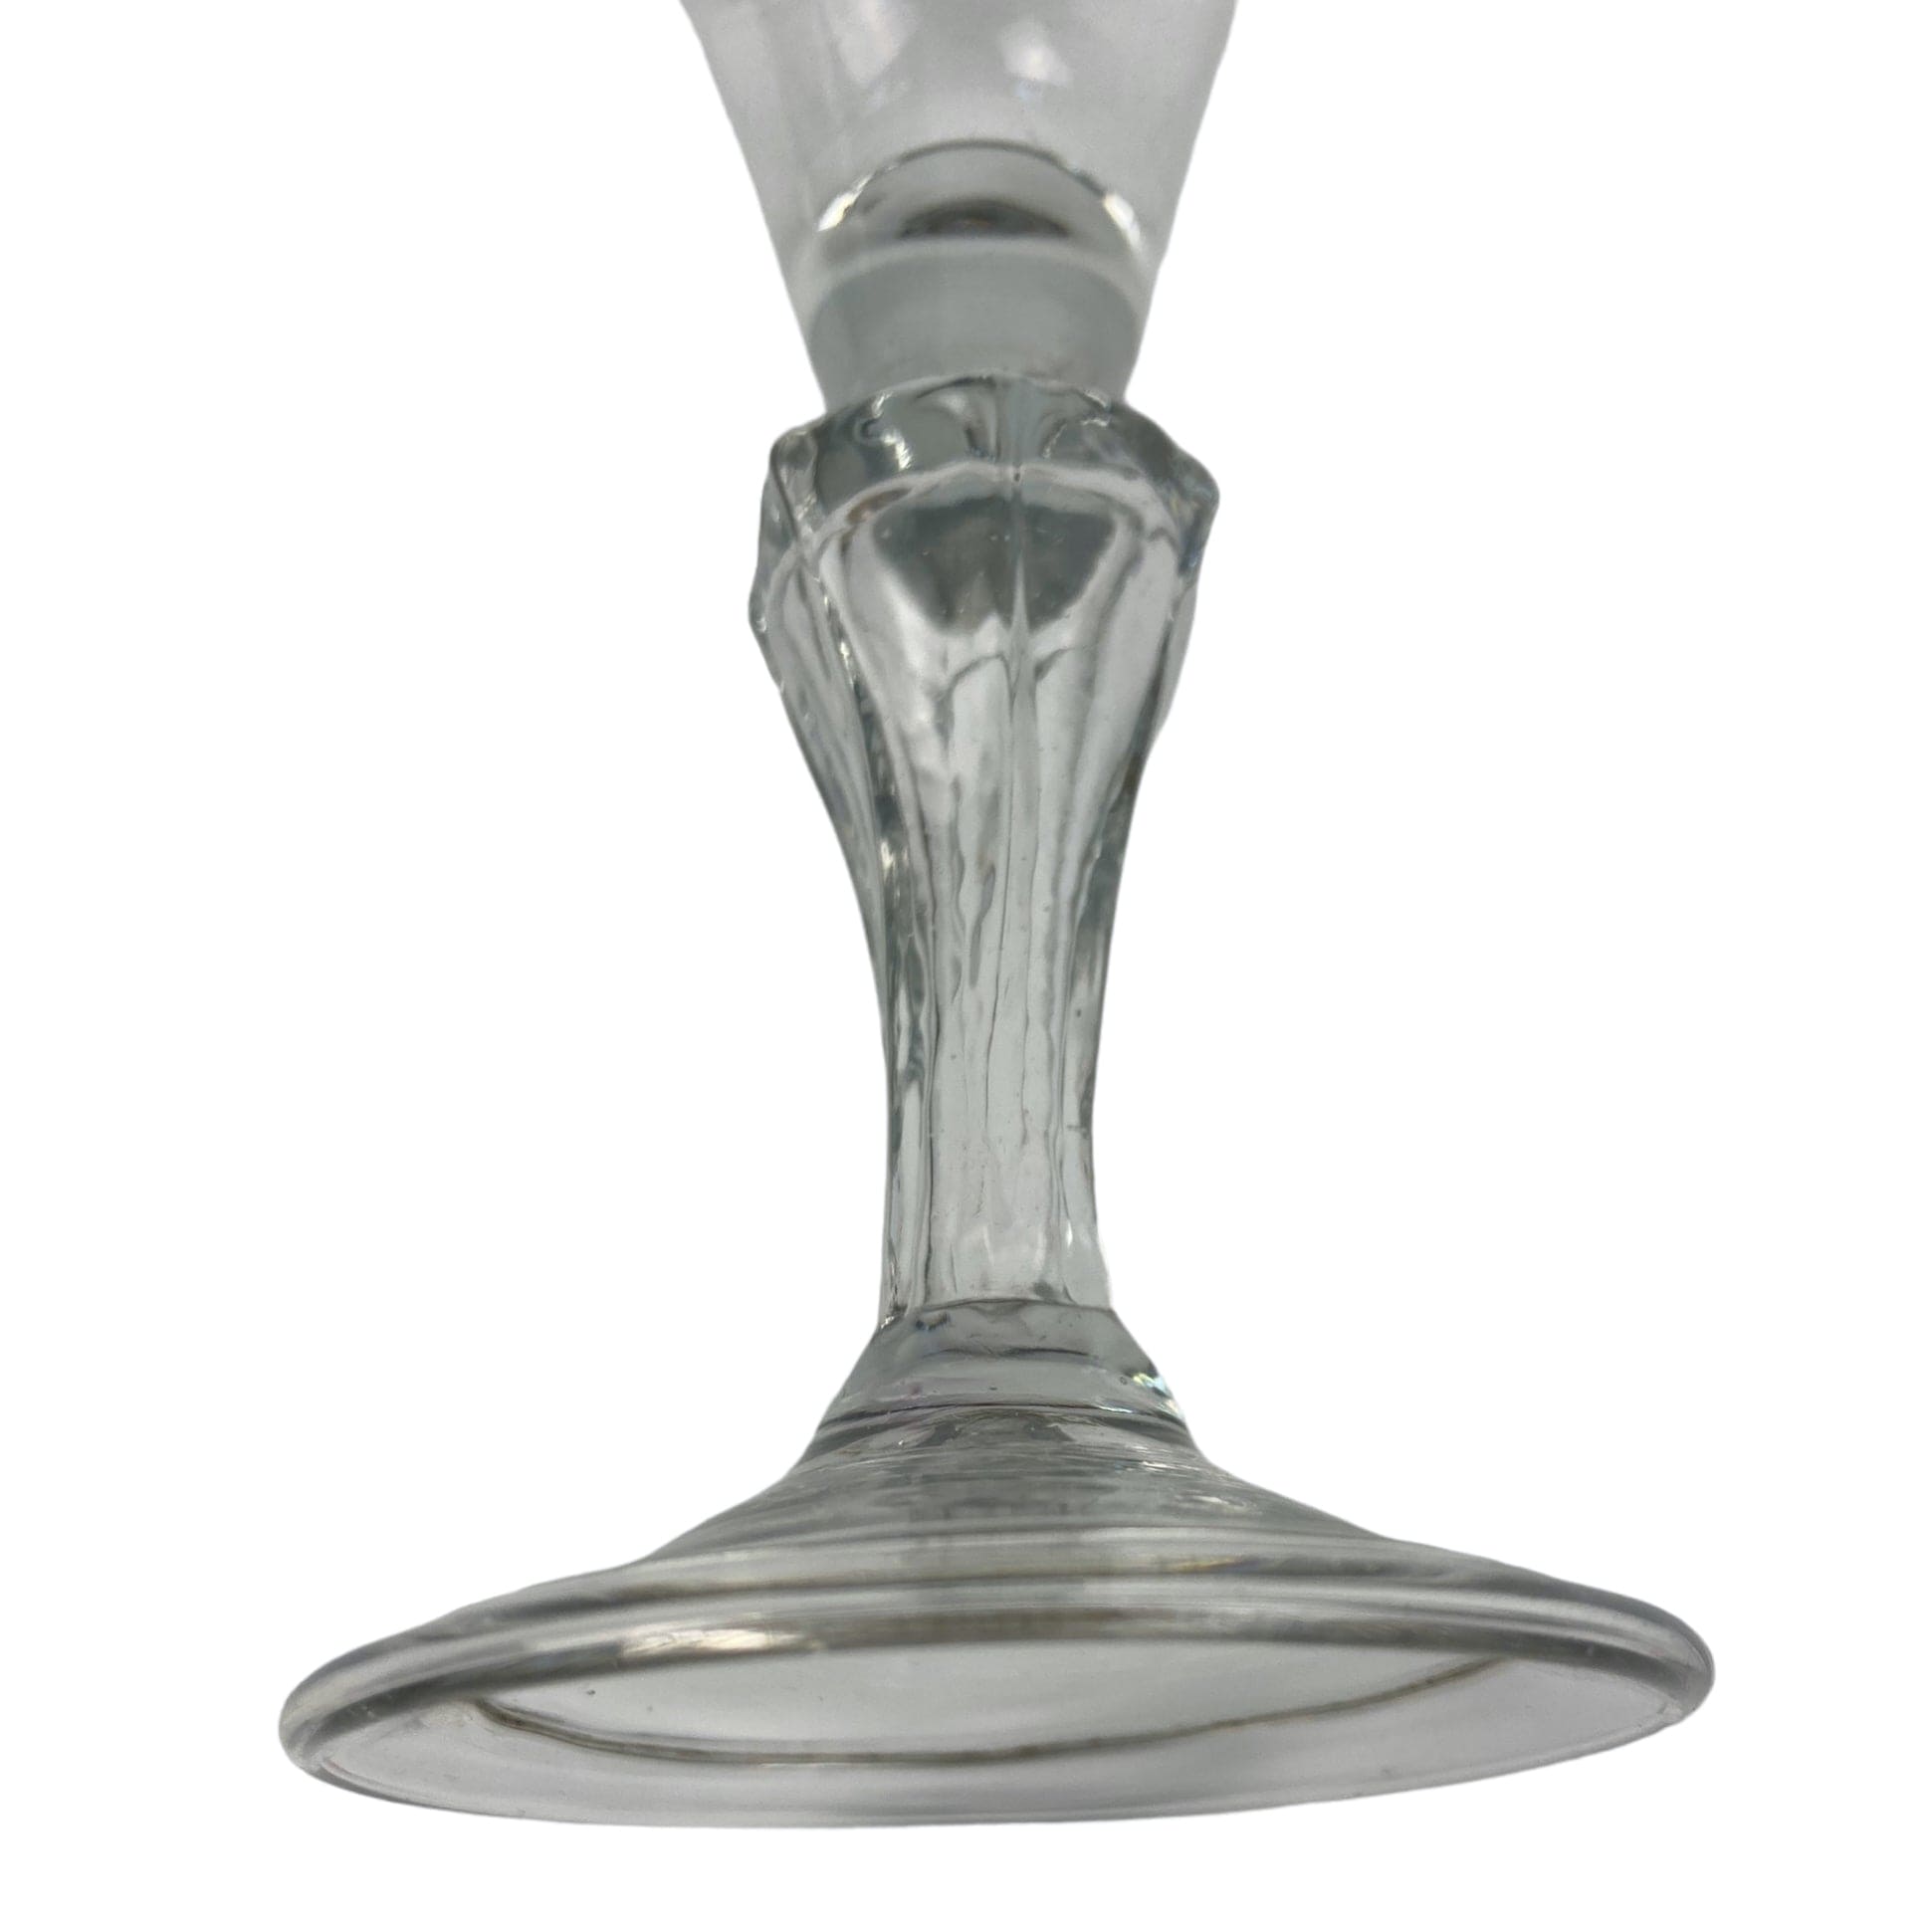 Ancien verre à pied du XVIIIe. siècle